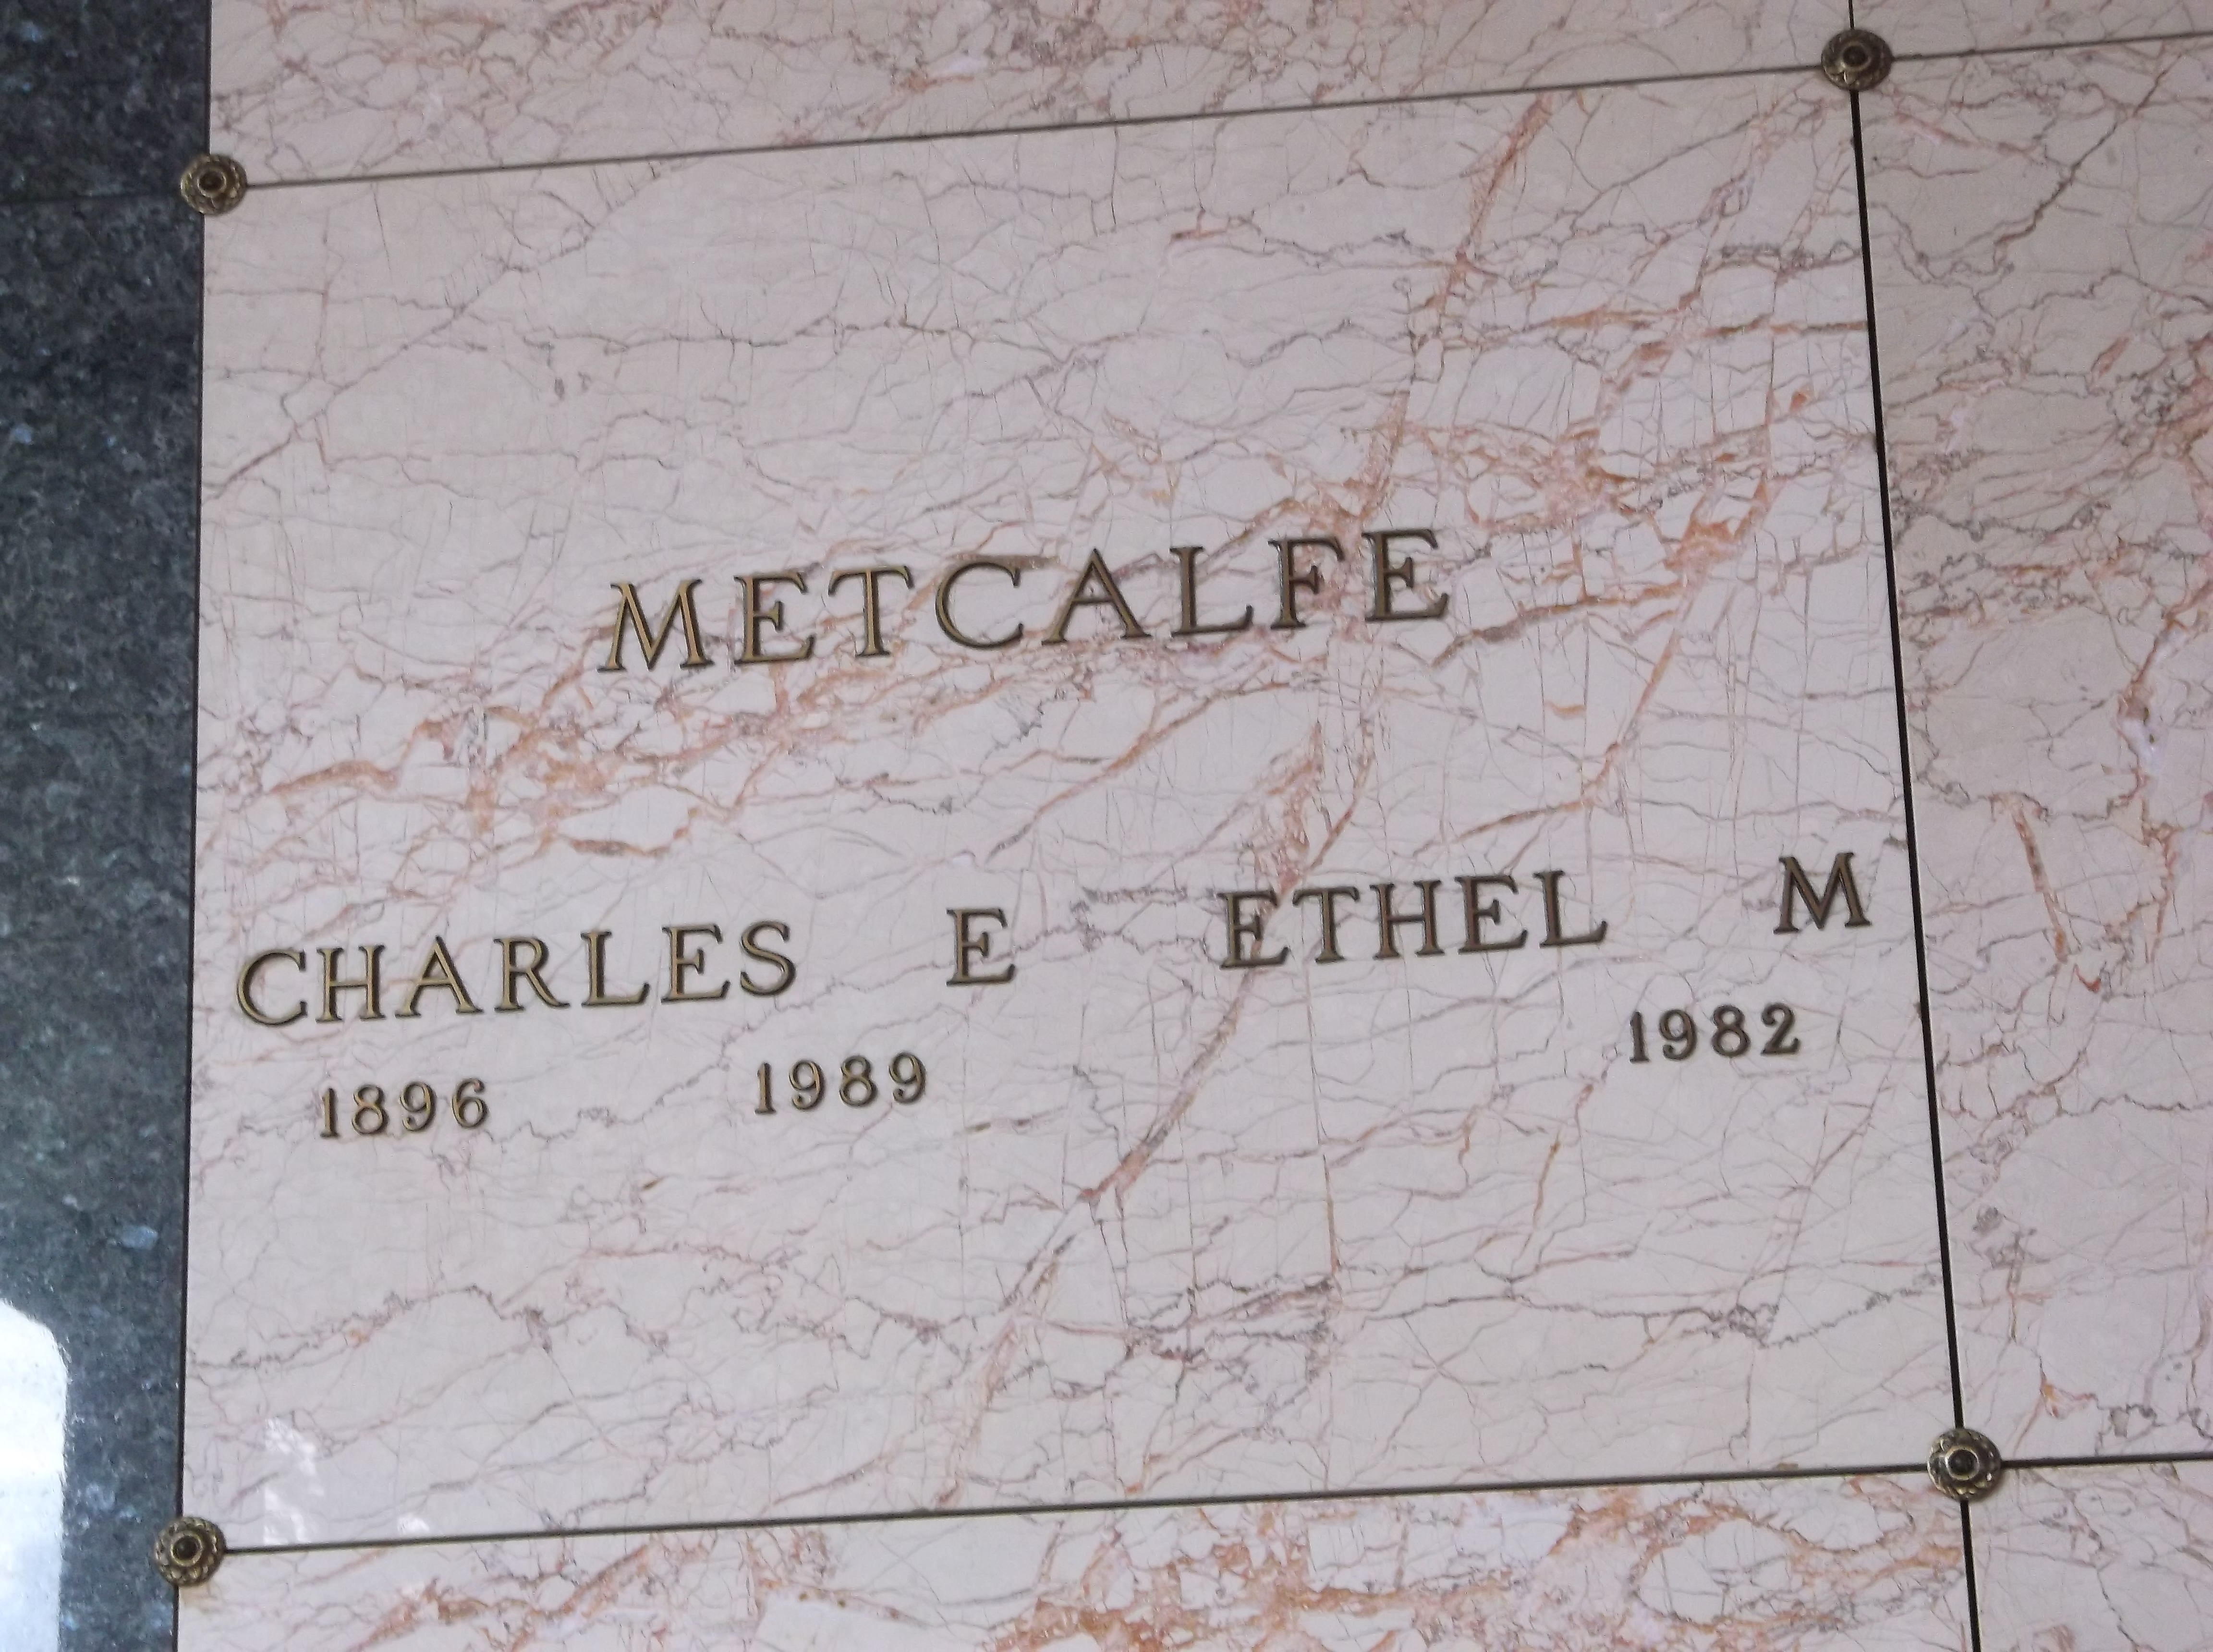 Ethel M Metcalfe